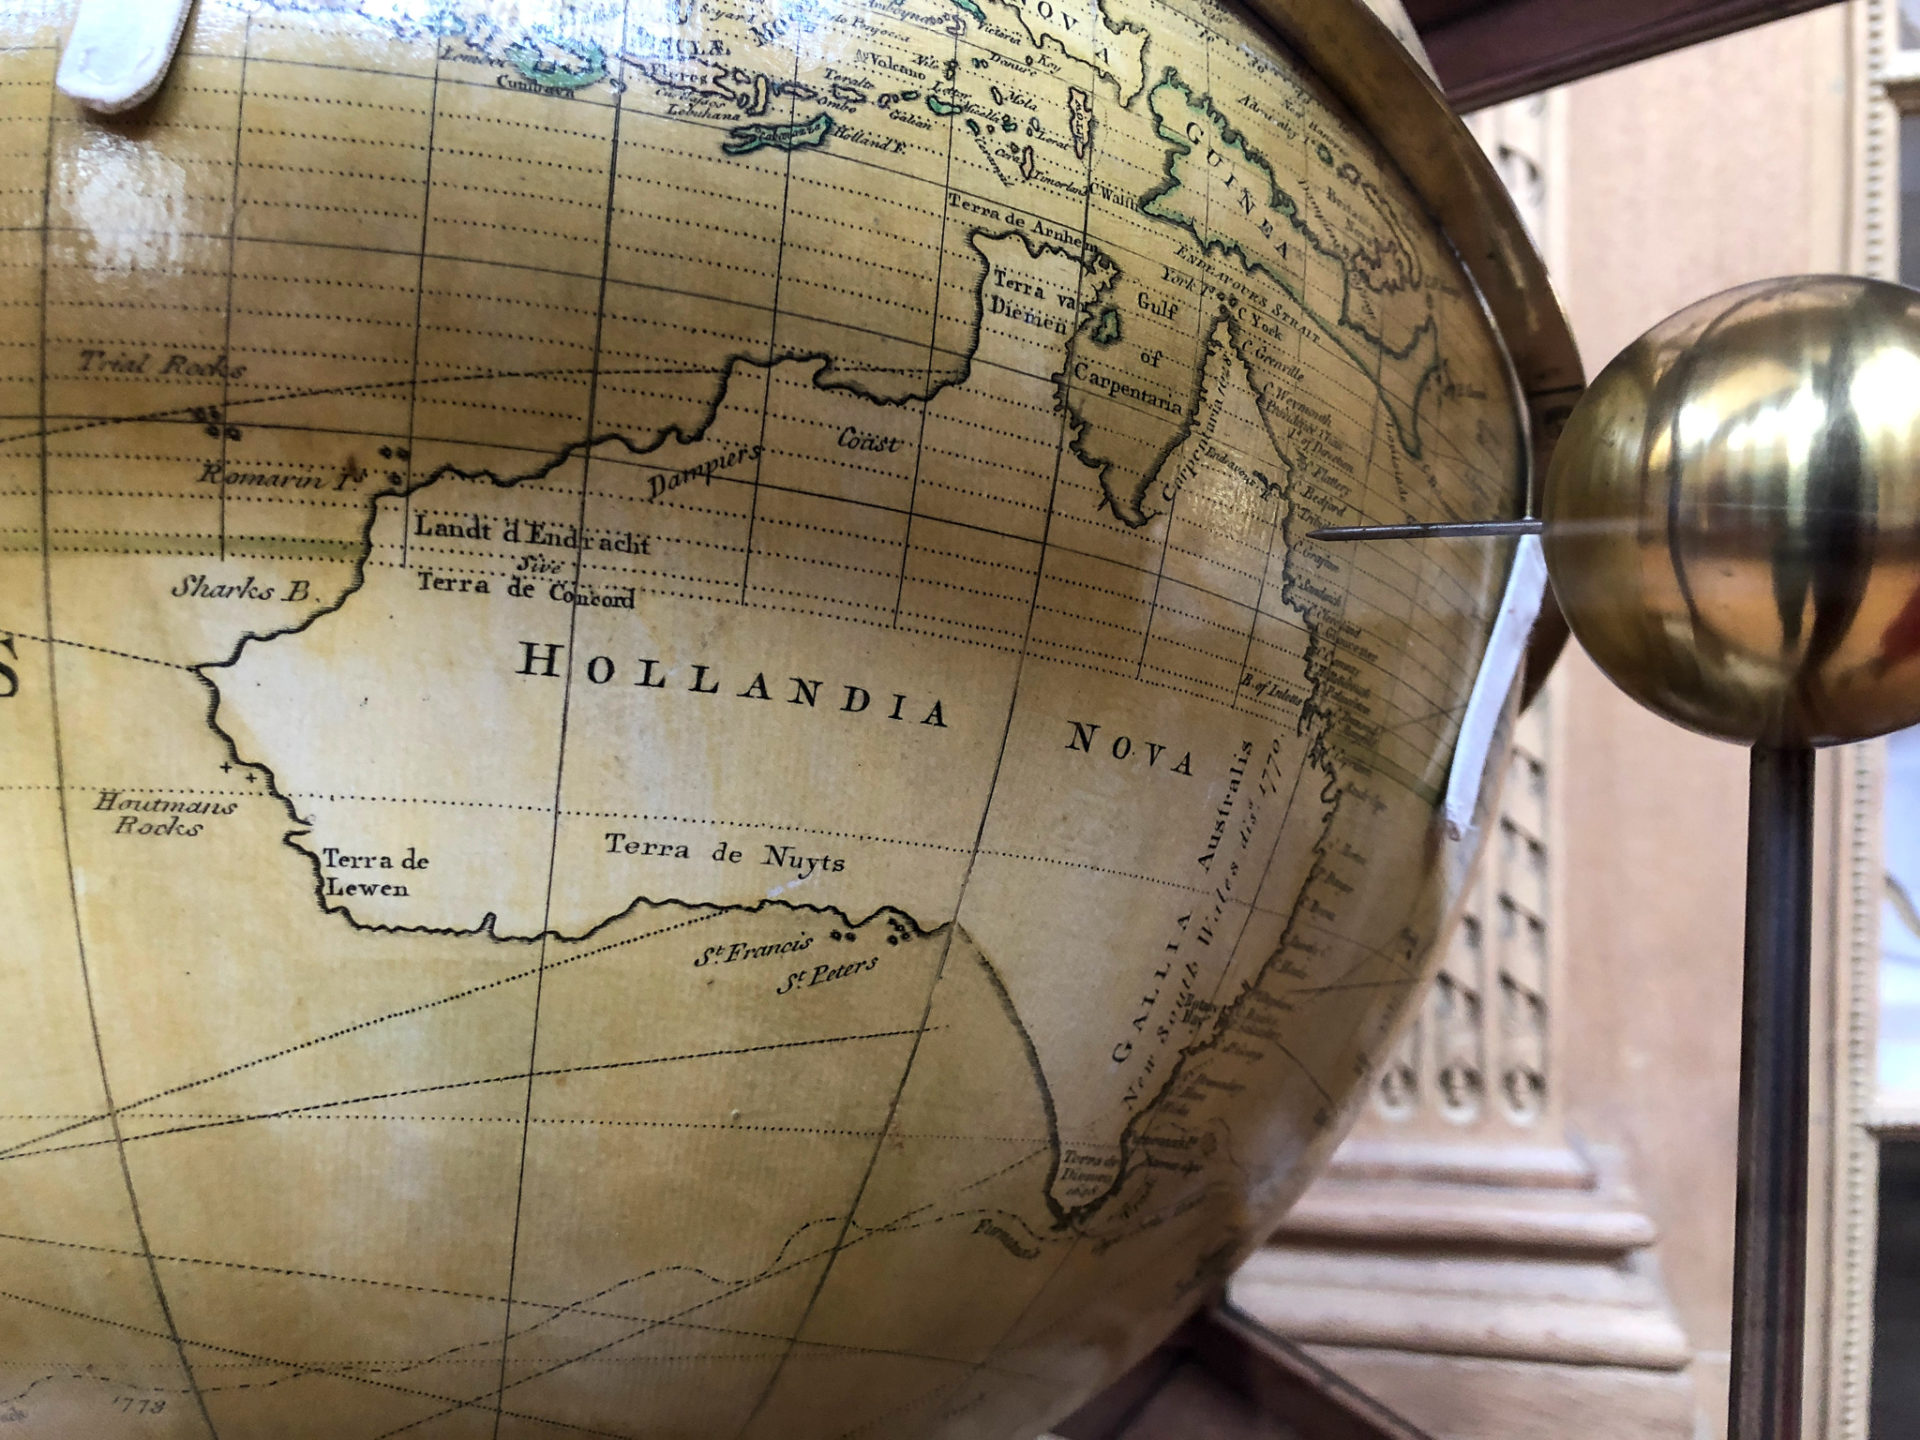 Globus im Teylers Museum in Haarlem auf dem Australien als Hollandia Nova ausgewiesen ist